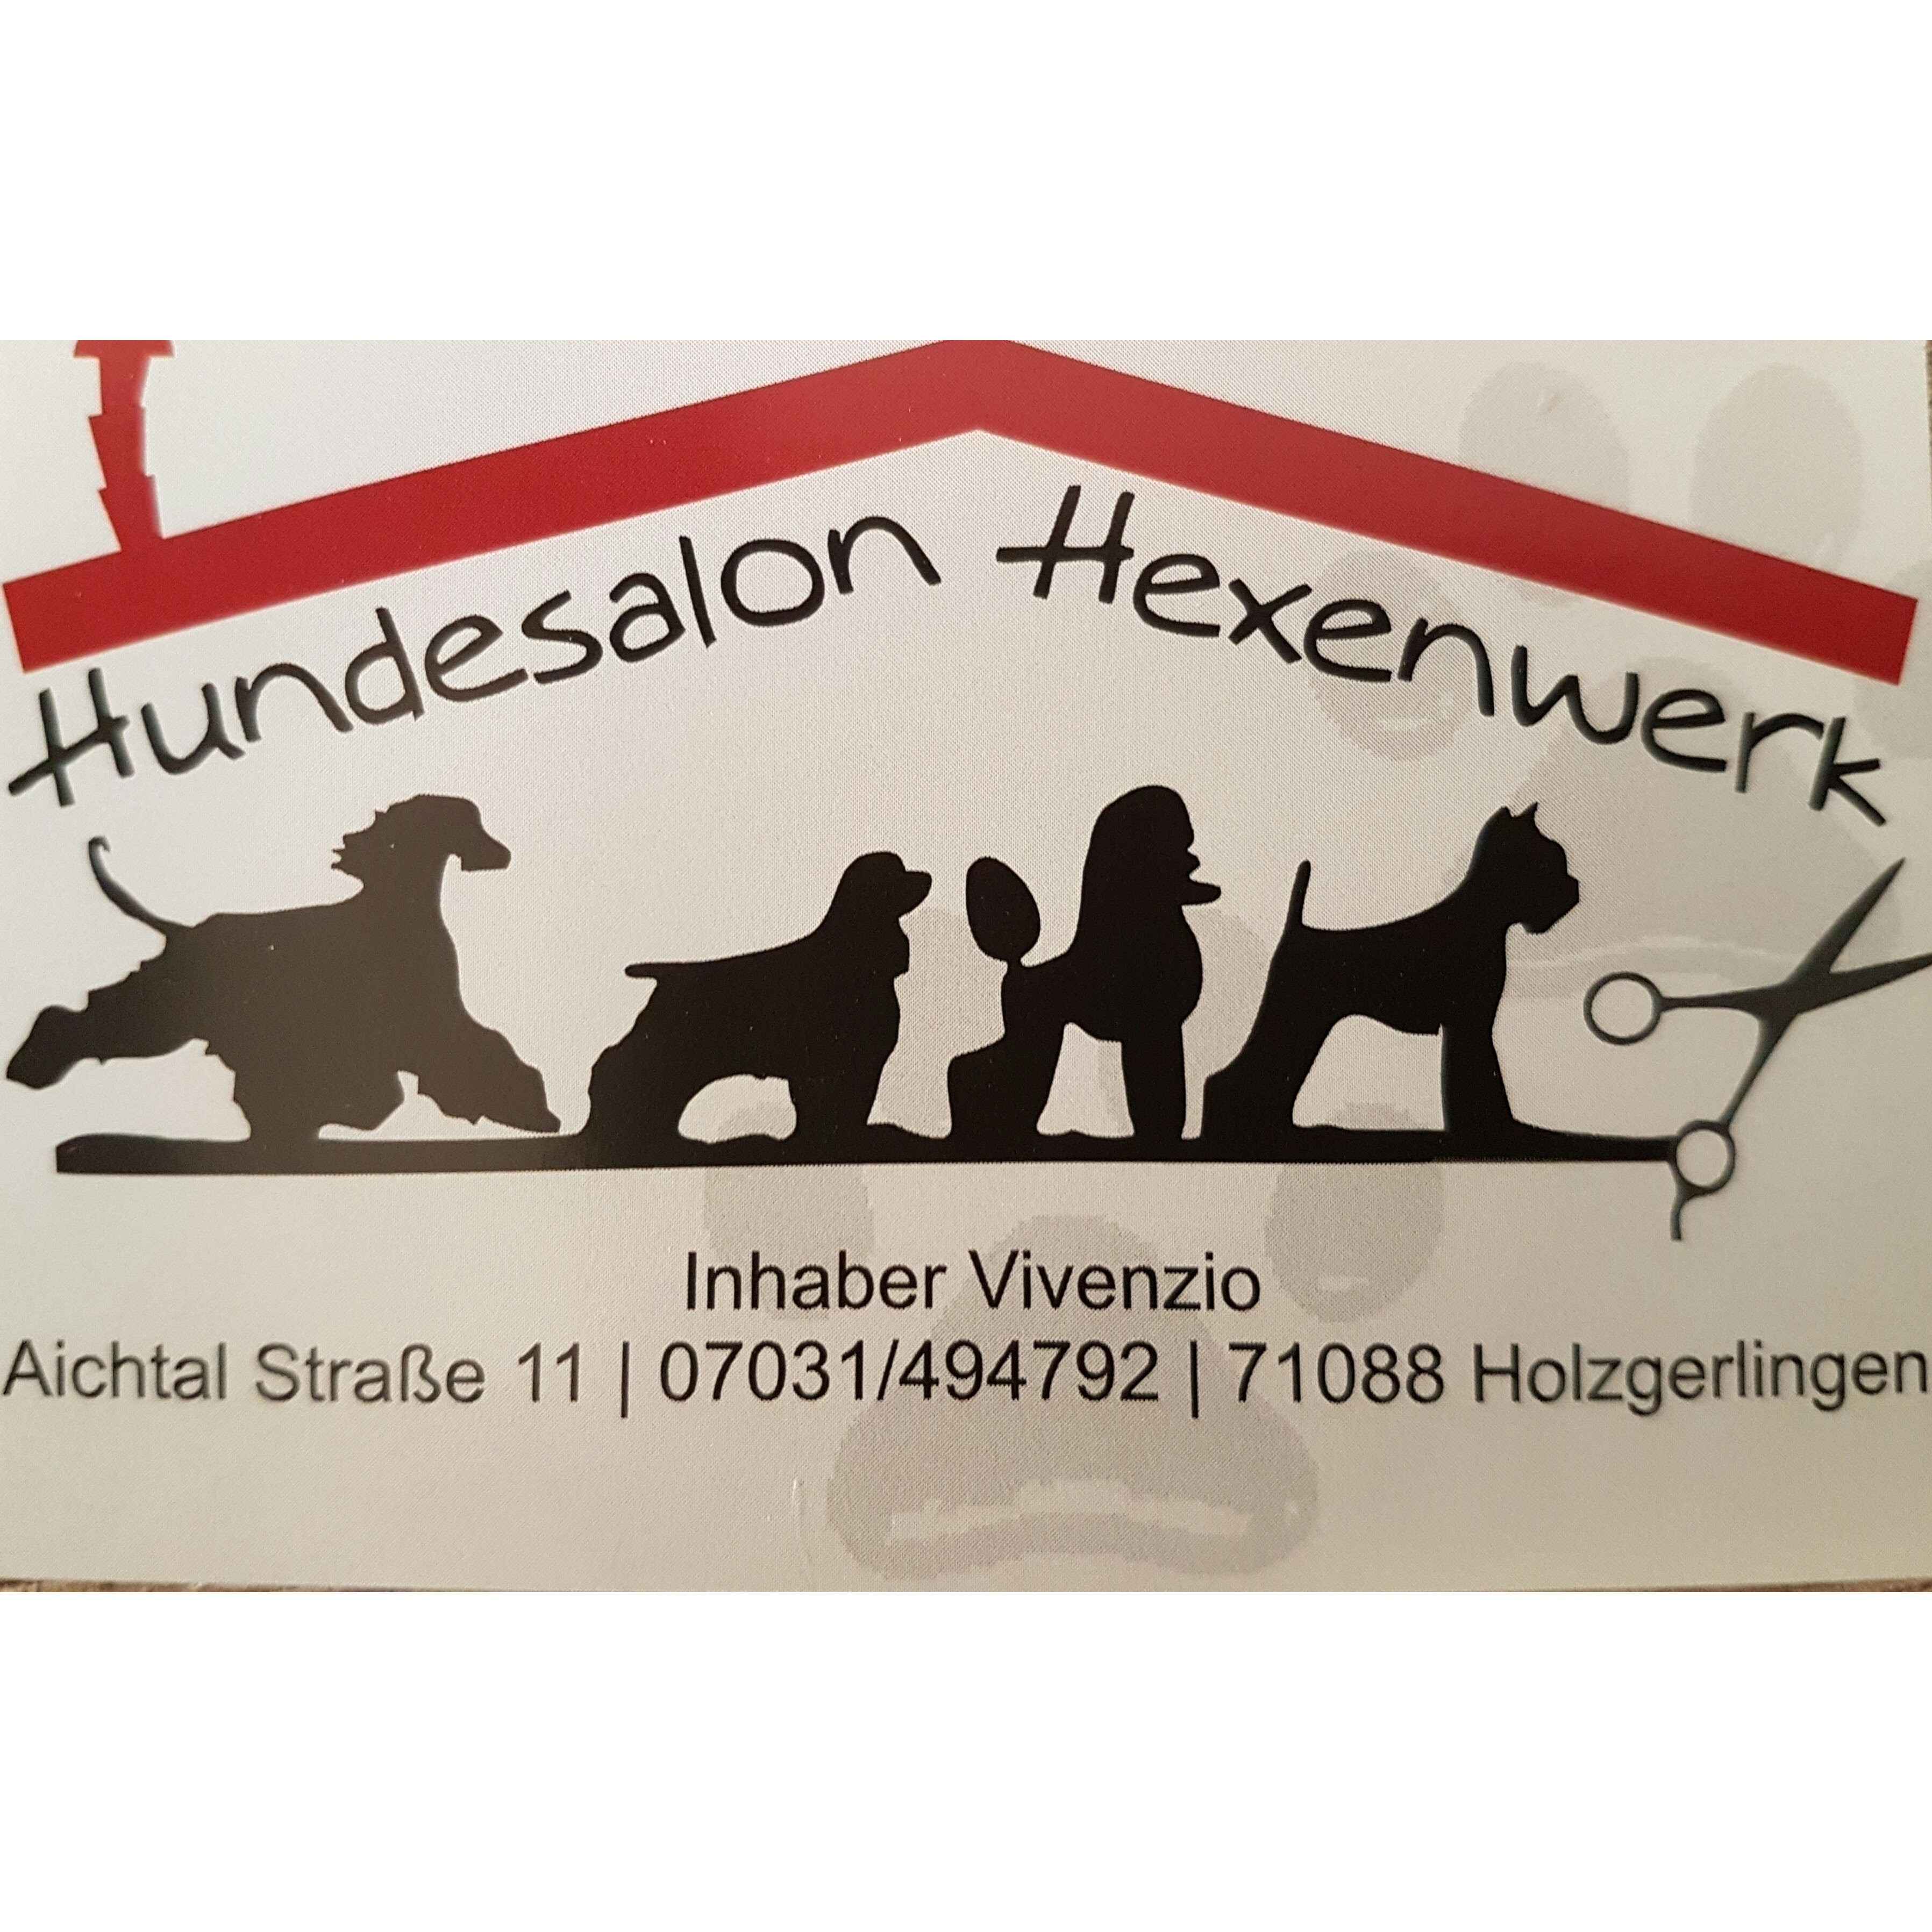 Hundesalon Hexenwerk – Ihr Hundesalon in Böblingen Logo